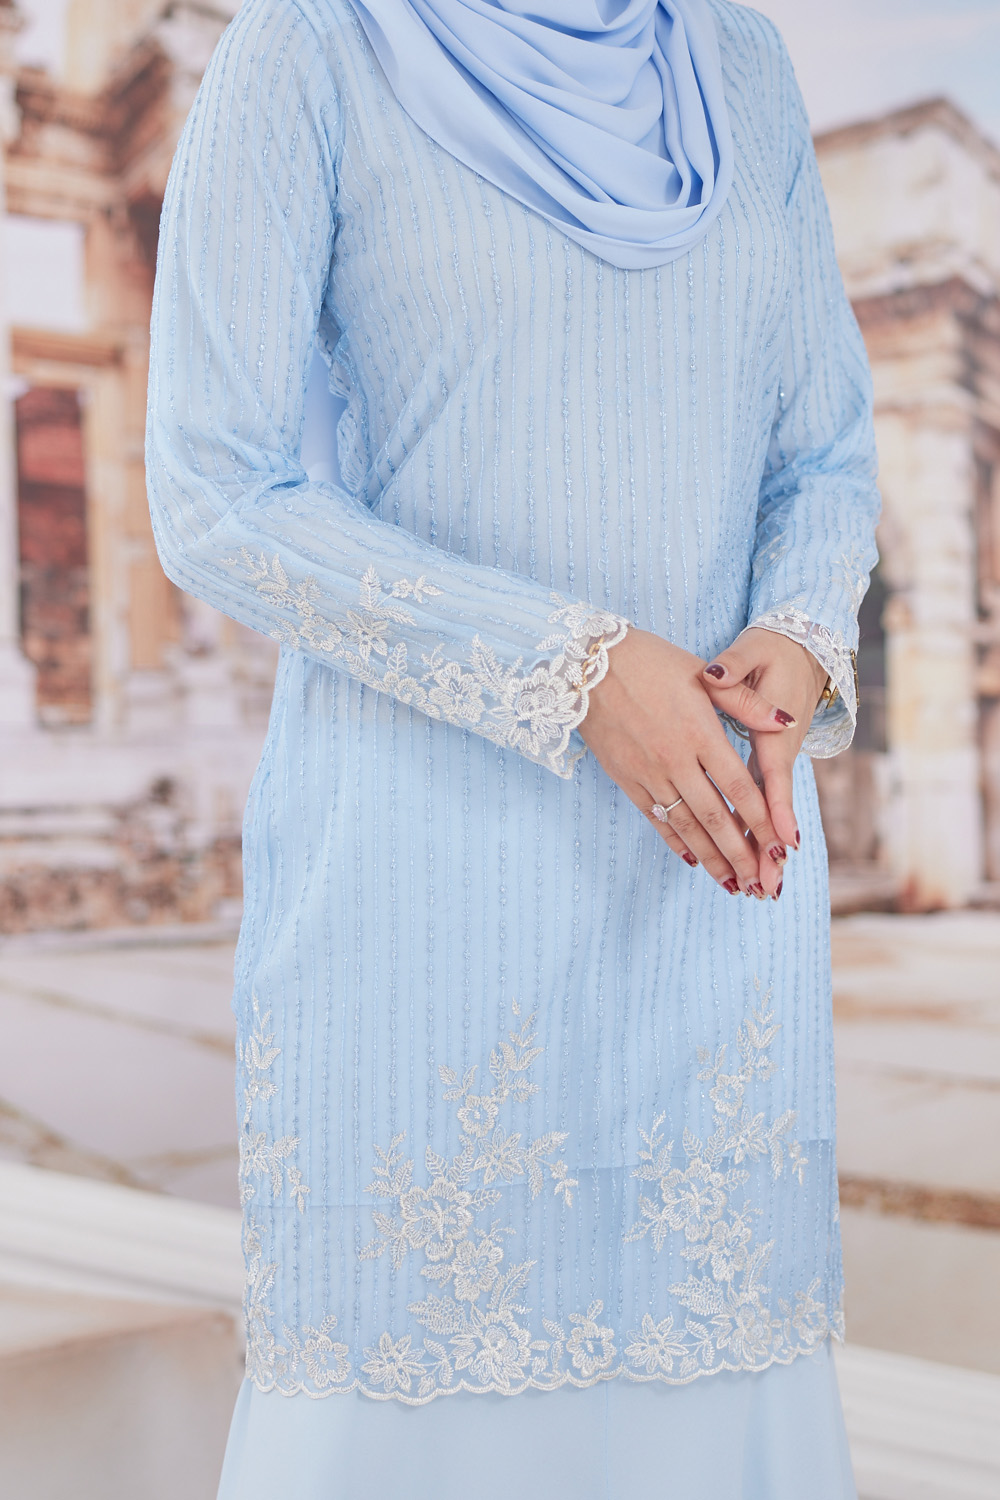 Baju Melayu Andika in Baby Blue-19 – FASHIONHUB